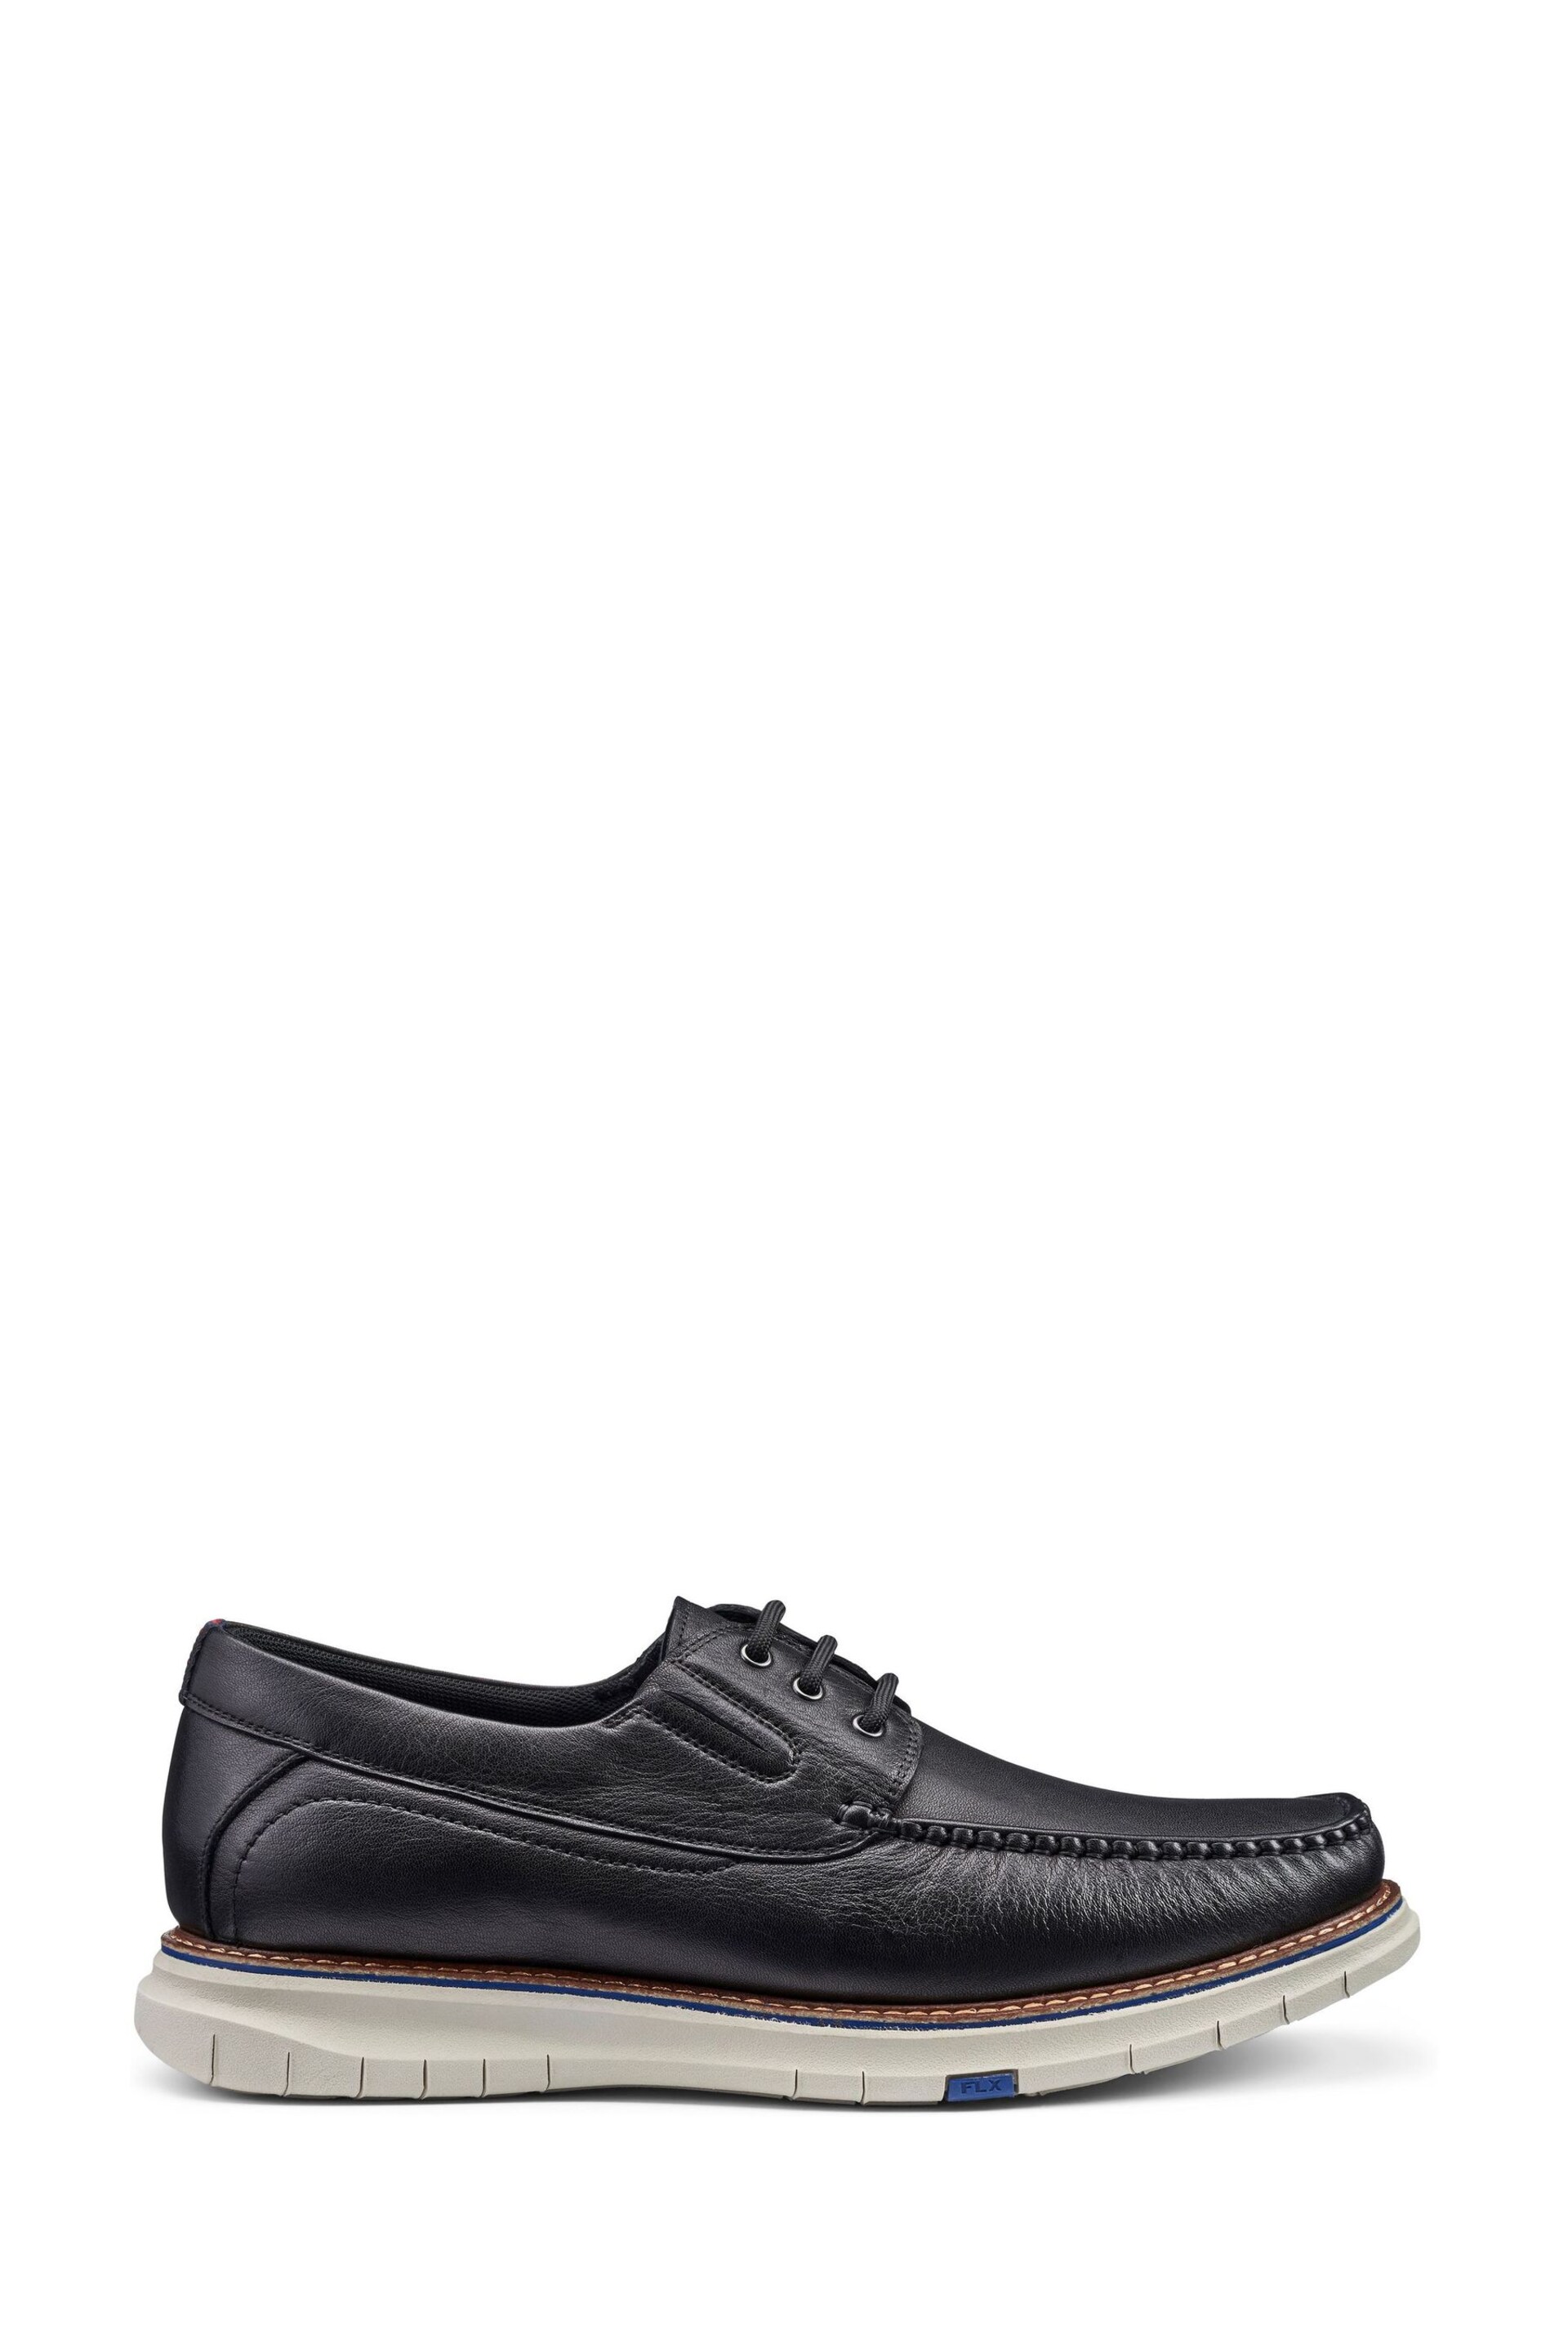 Hotter Black Port Lace-Up Regular Fit Shoes - Image 1 of 3